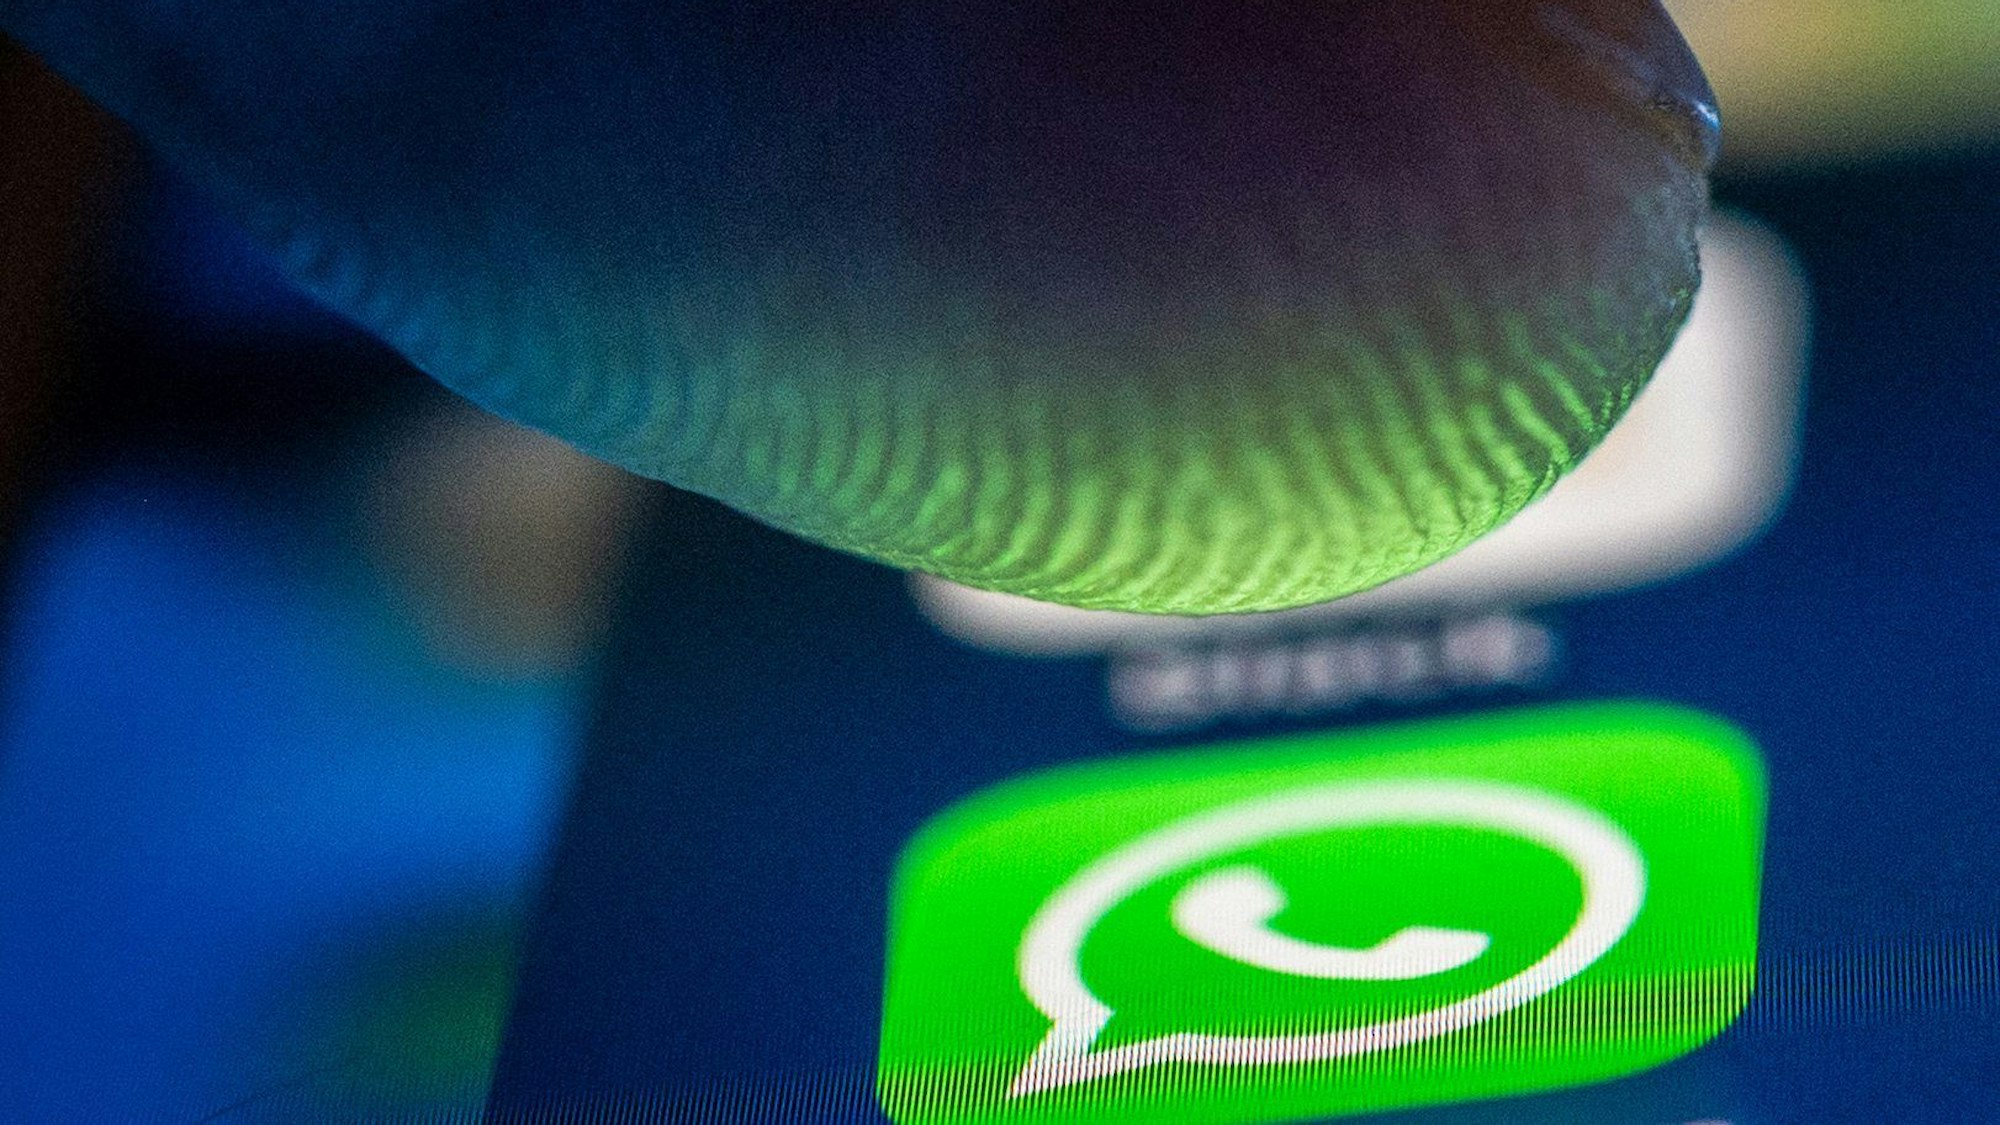 Ein Finger nähert sich dem Whatsapp-Logo auf einem Smartphone.